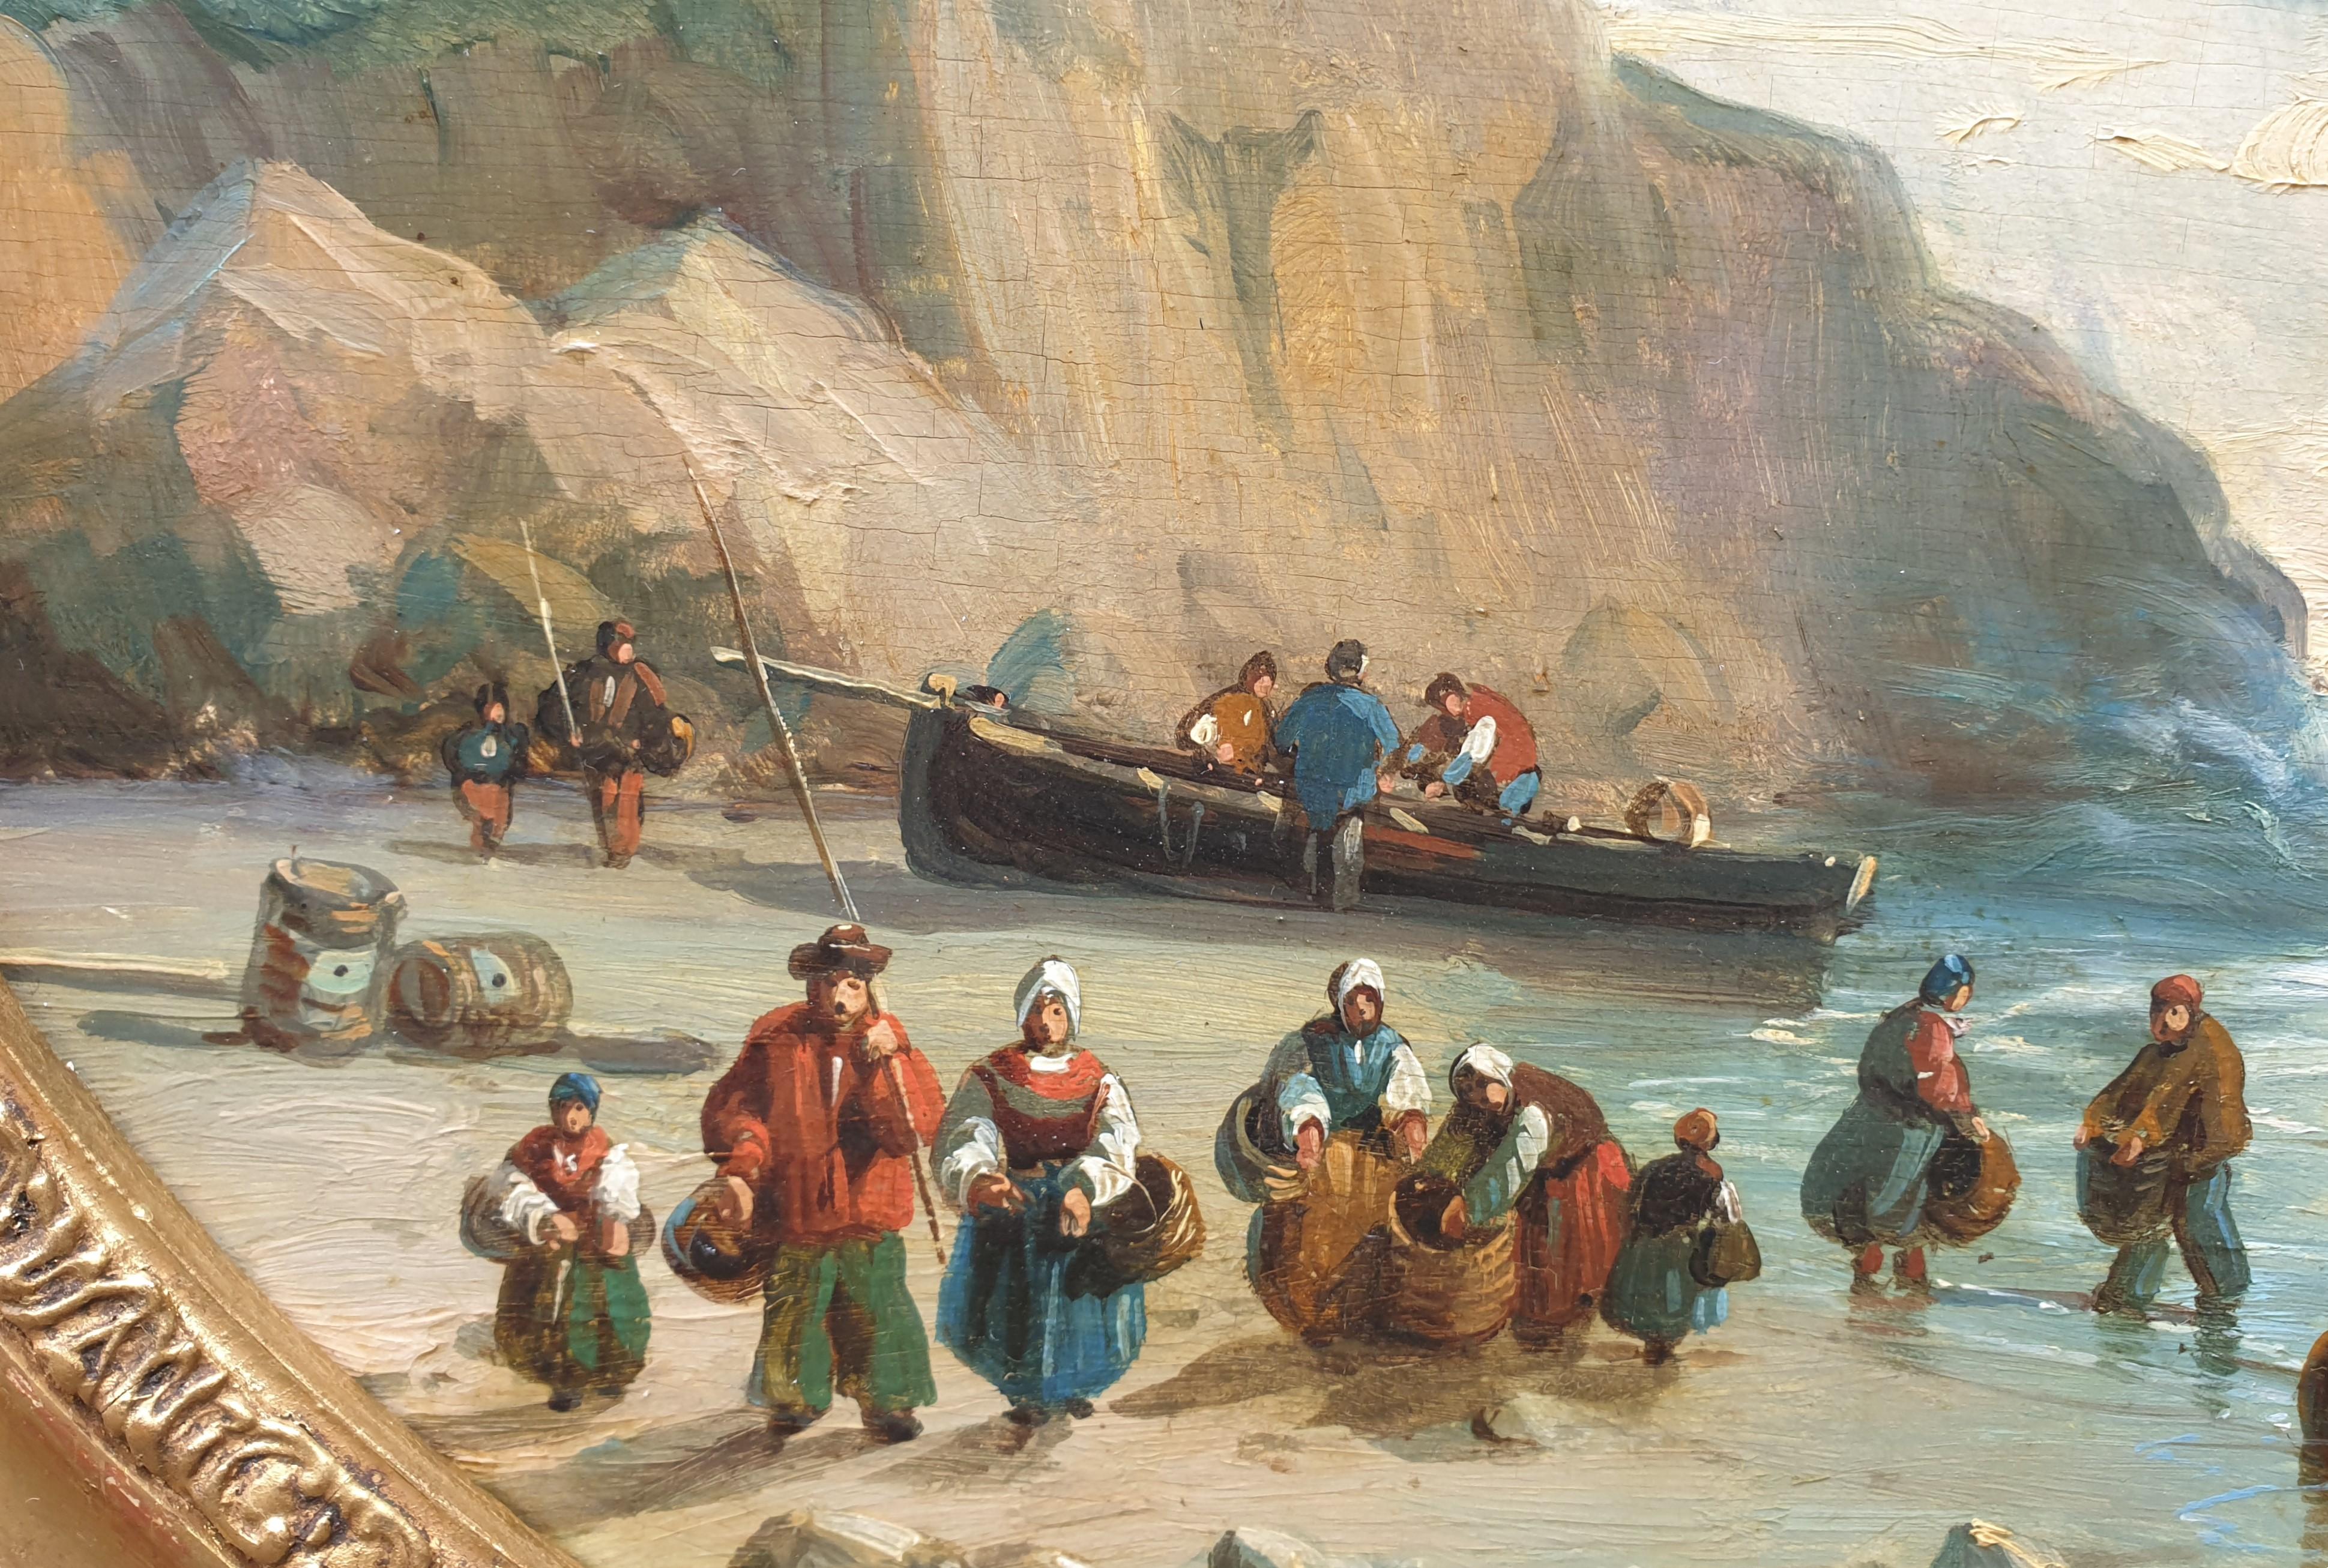 Peinture de KUWASSEG ovale bateaux de plage français romantiques Normandie 19e  - Romantique Painting par Charles Euphrasie Kuwasseg